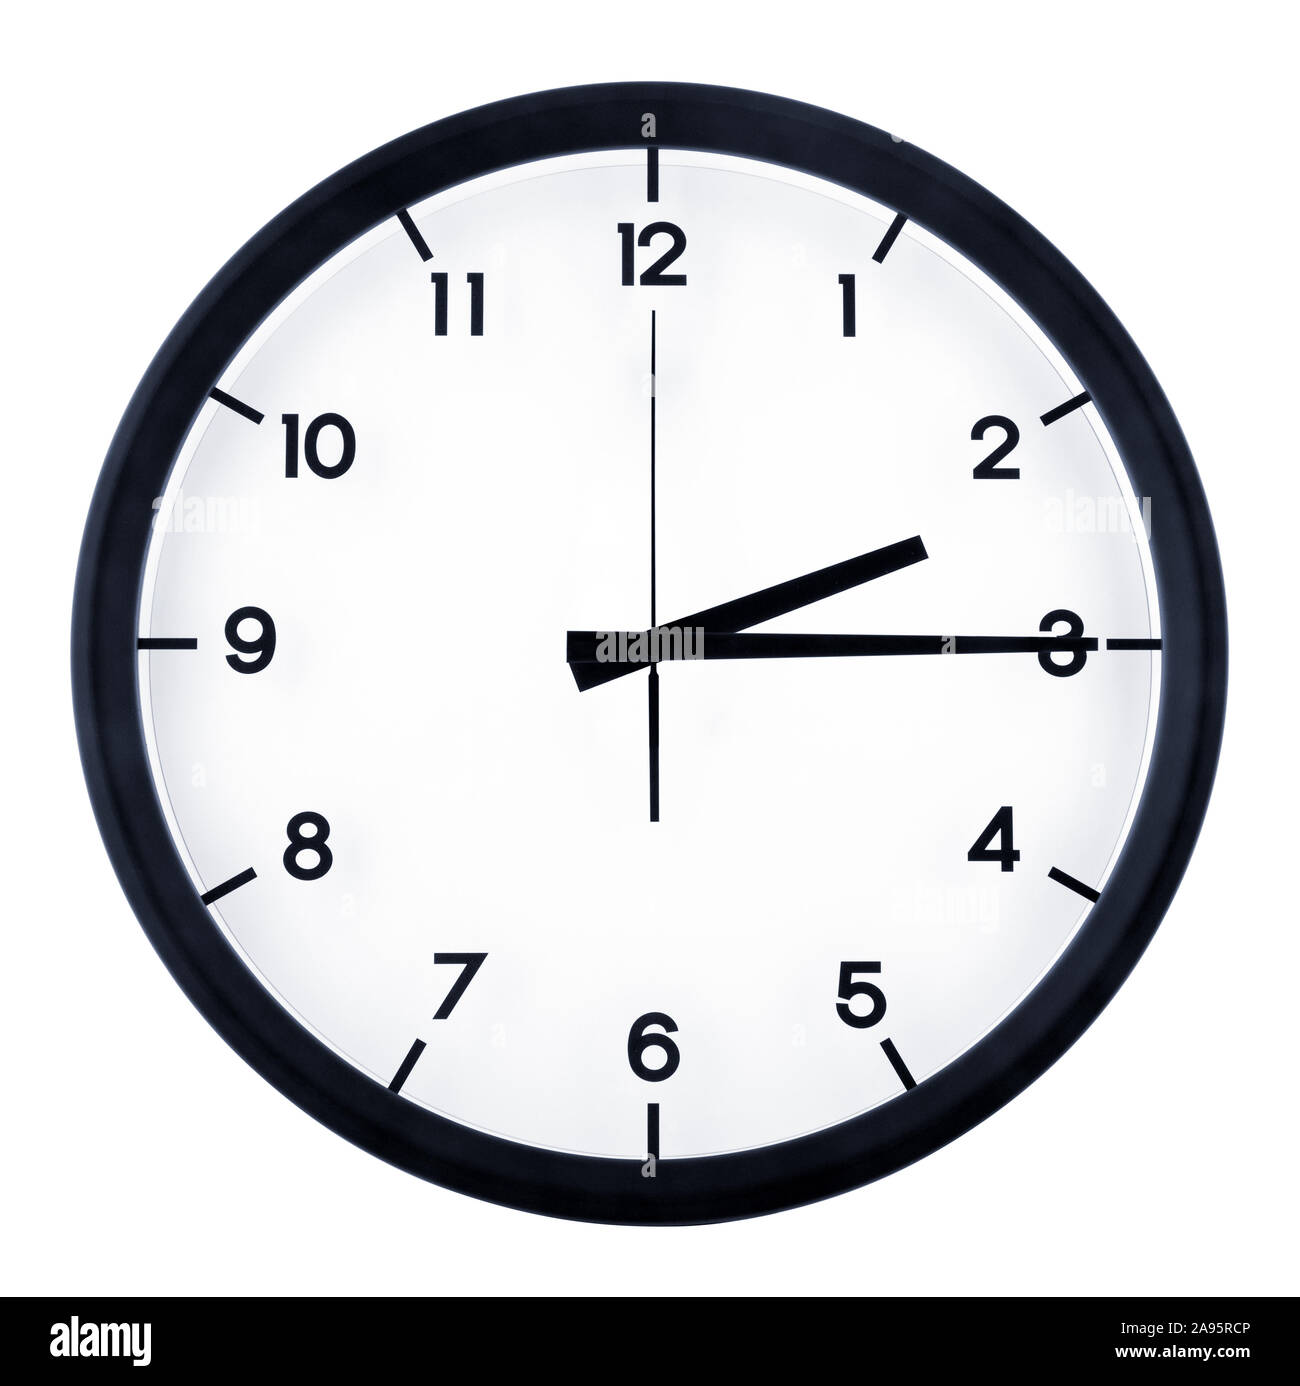 Klassische analoge Uhr auf 2 15Uhr, auf weißem Hintergrund zeigen  Stockfotografie - Alamy